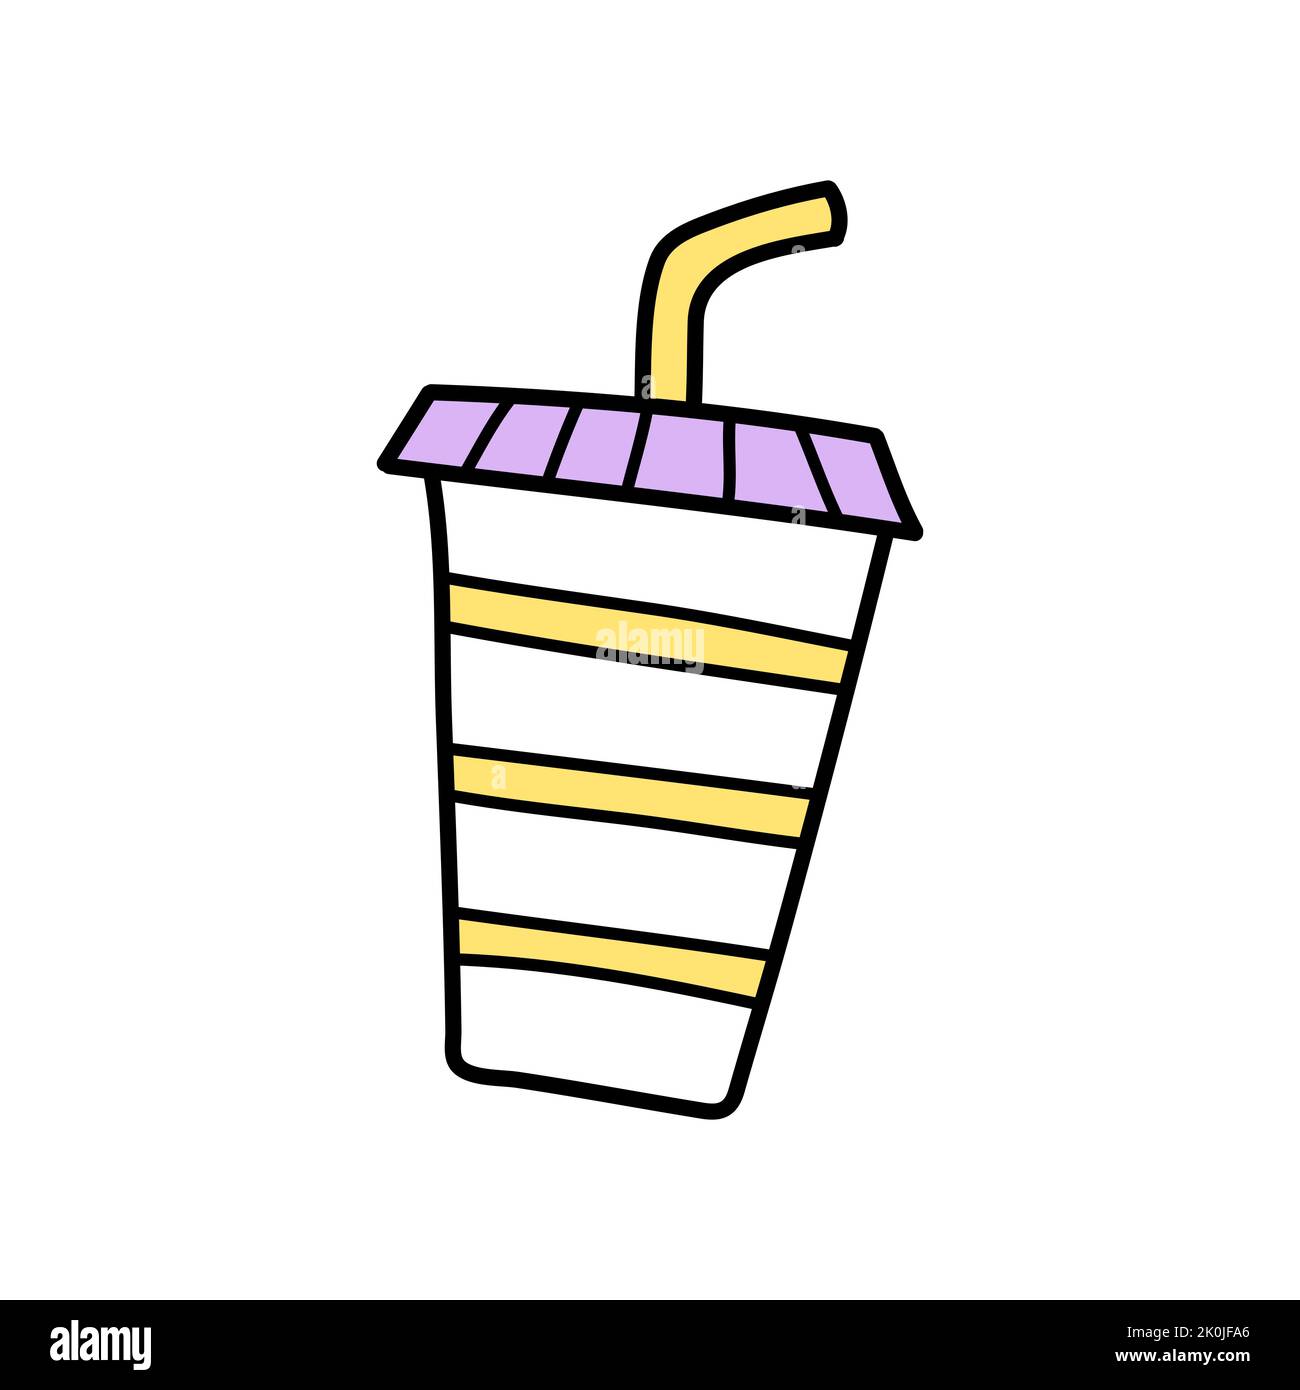 Plastic cup straw icon cartoon Imágenes recortadas de stock - Página 2 -  Alamy